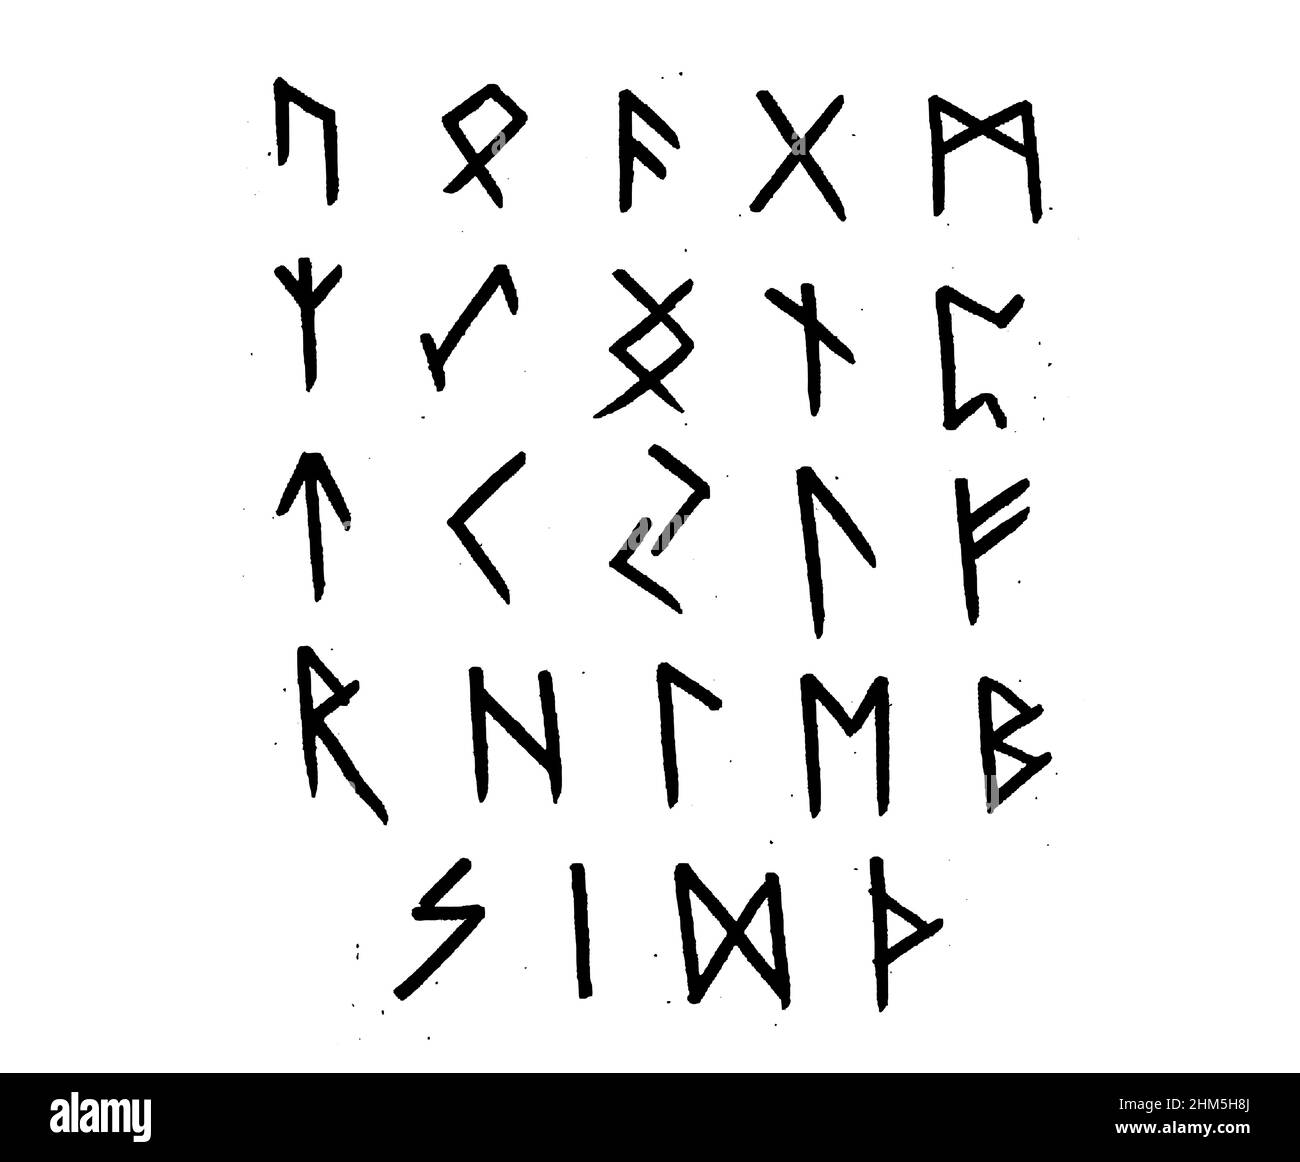 Rune vichinghe, alfabeto futhark anziano. Rune scandinave retro norse. Tracciare lettere celtiche antiche. Vecchie icone hieroglifiche occulte. Illustrazione Vettoriale